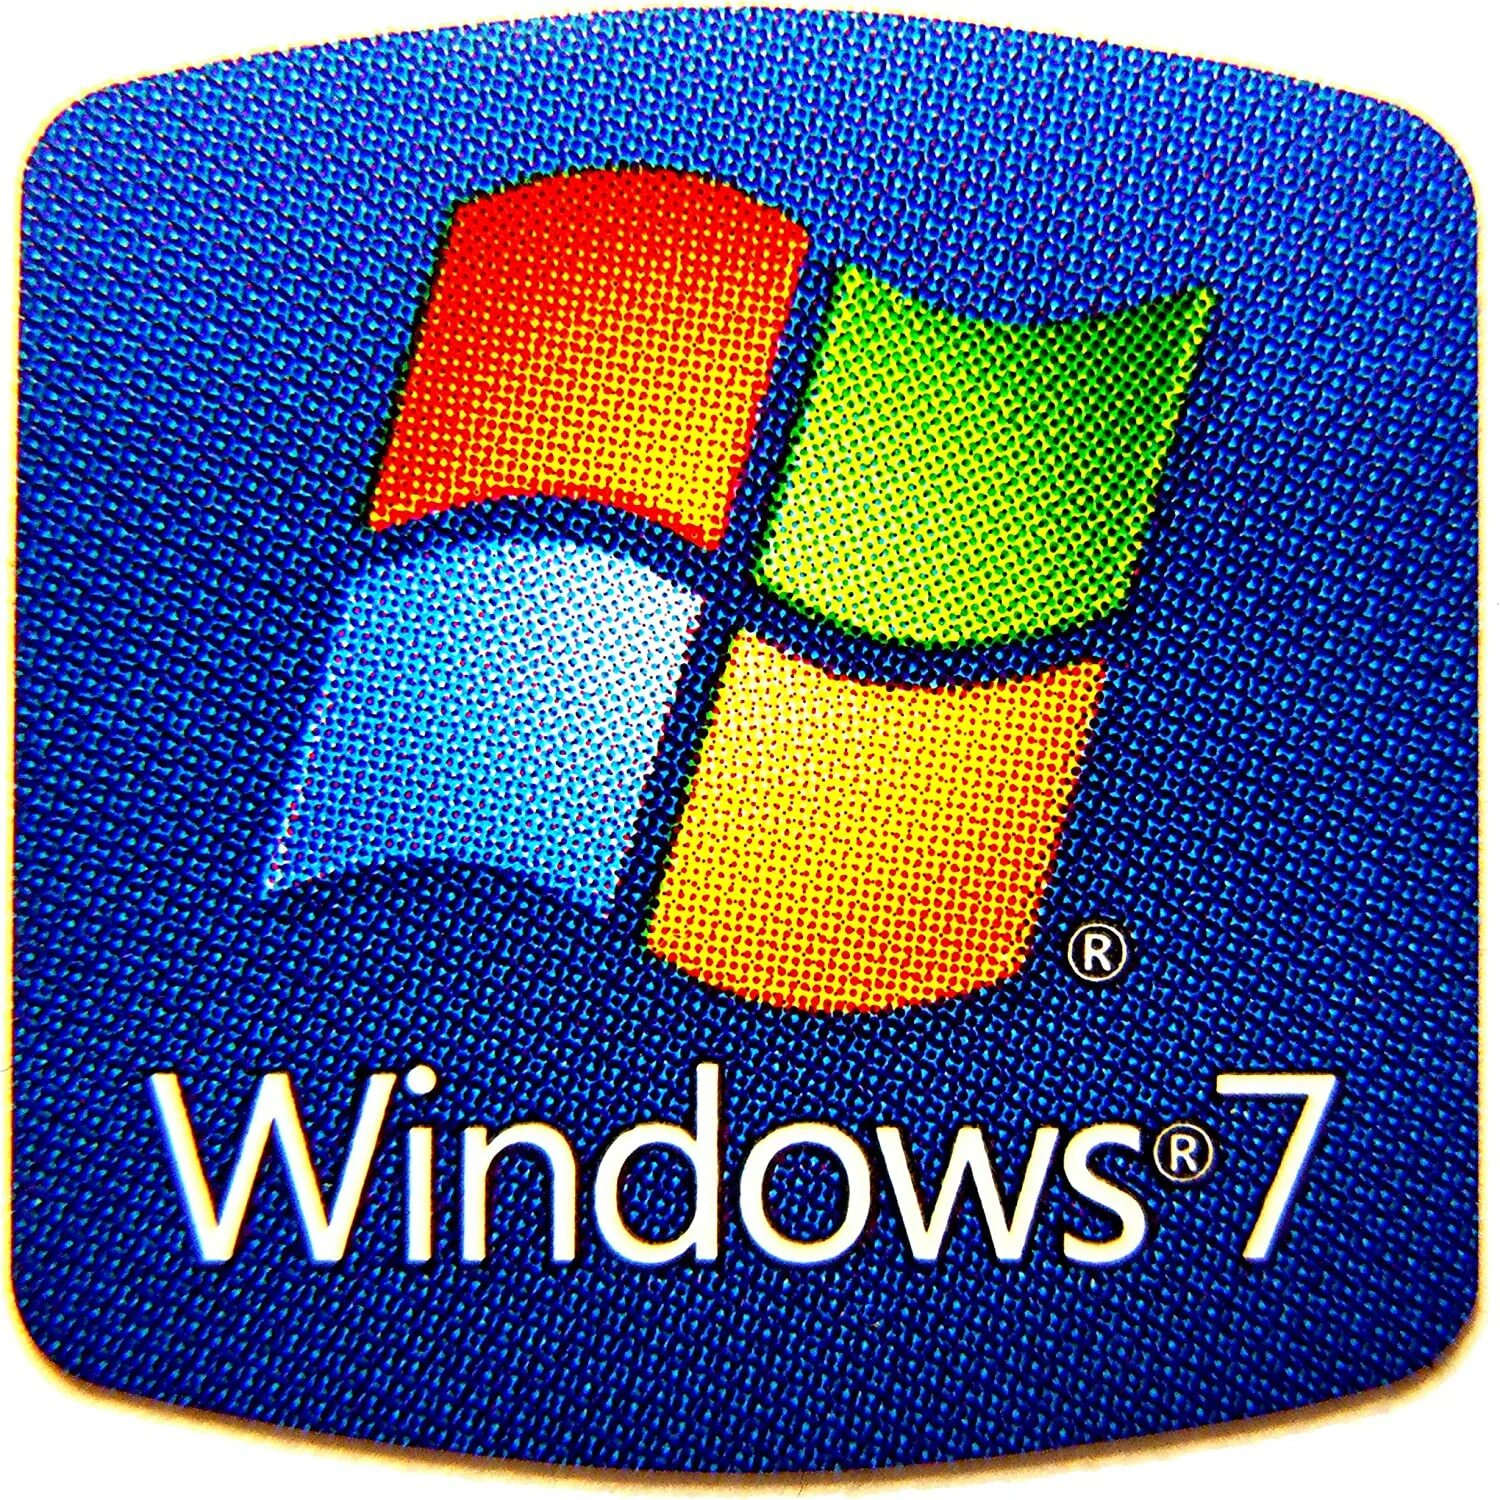 Win icons. Логотип Windows. Значок Windows. Виндовс 7. Значок Windows 7.